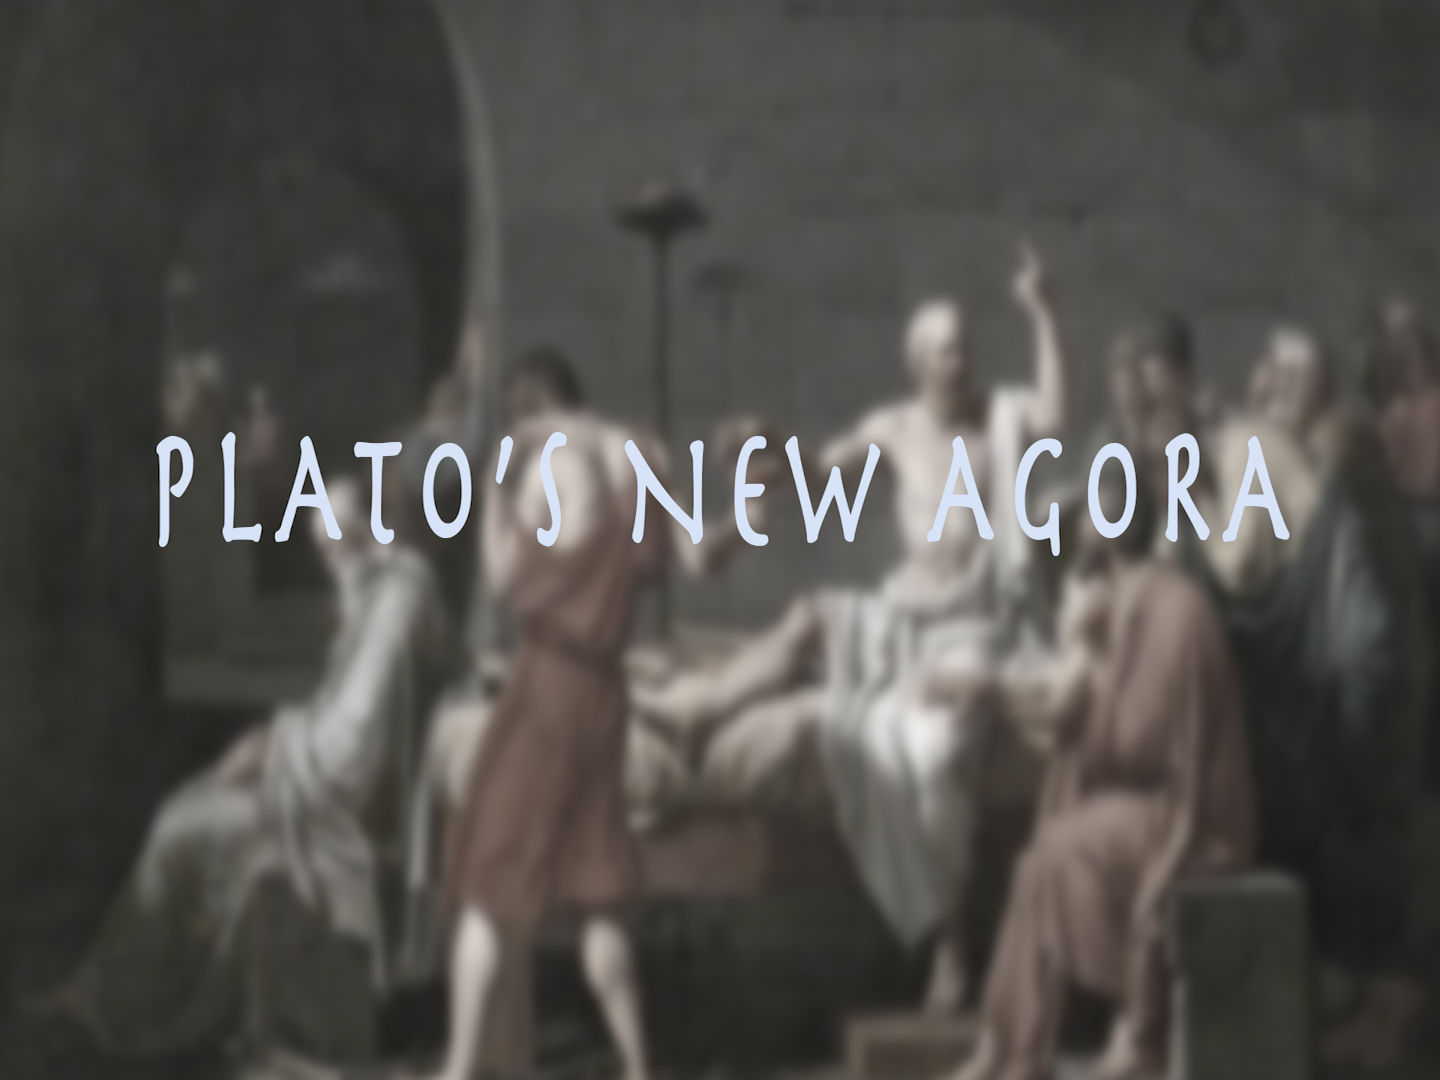 Plato's New Agora